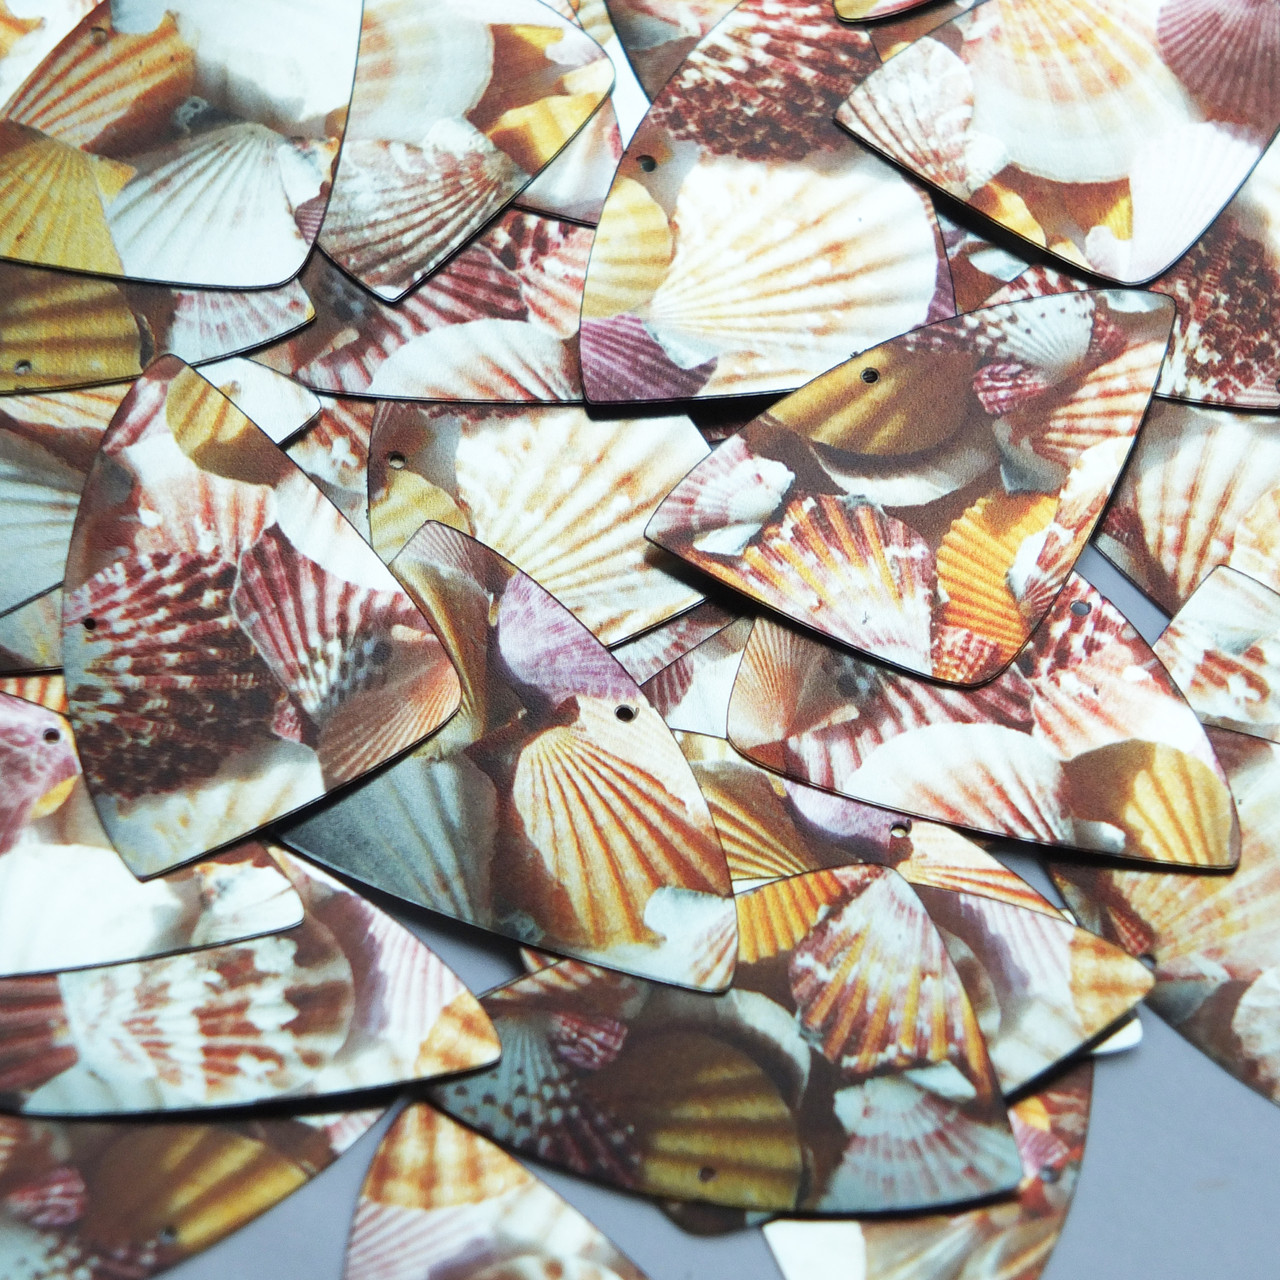 Fishscale Fin Sequin 1.5" Scallop Seashell Print Metallic